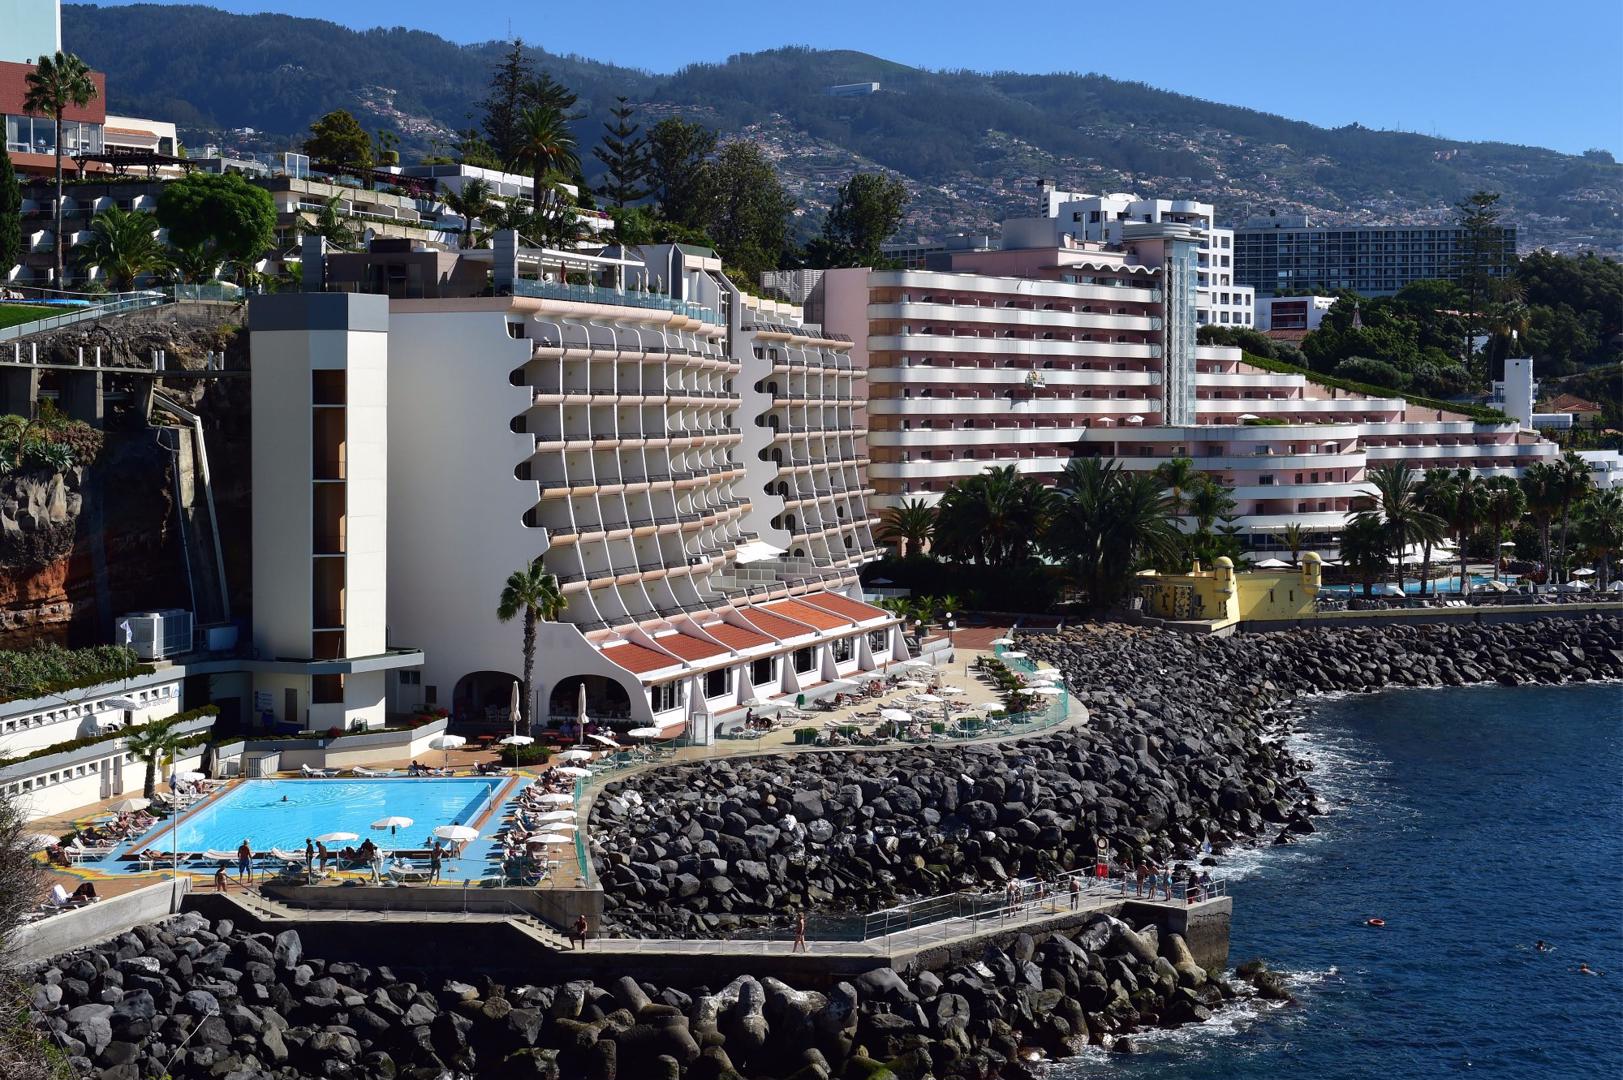 Pestana Carlton Madeira Premium Ocean Resort - Funchal - Portugal